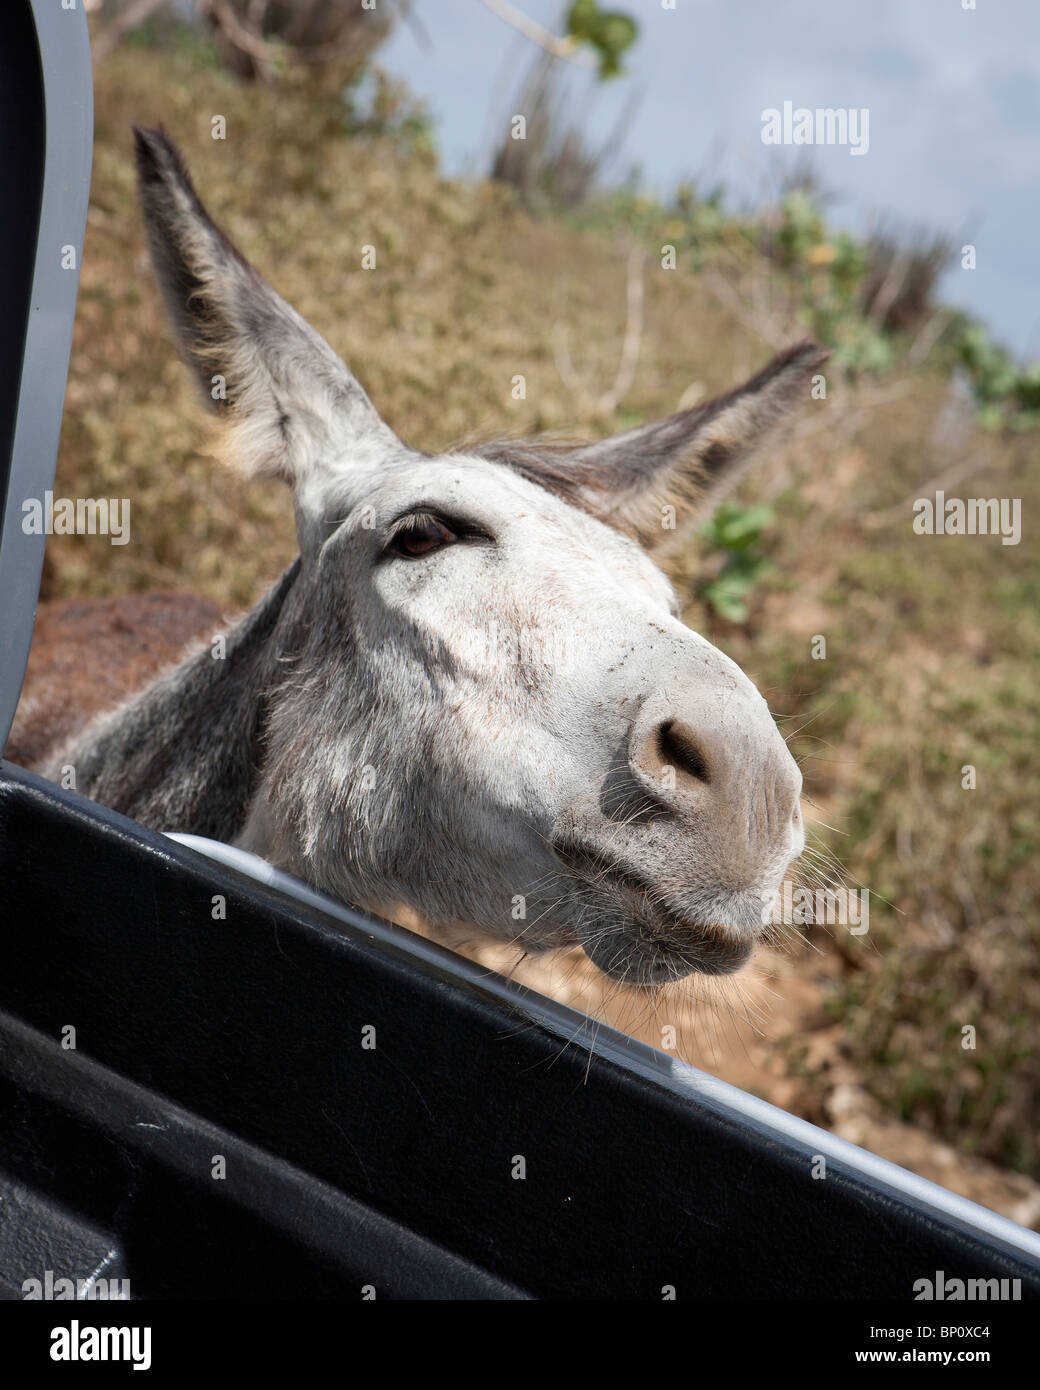 Donkey è volto all'interno del finestrino. Bonaire, Antille olandesi, Caraibi, Sud America Foto Stock